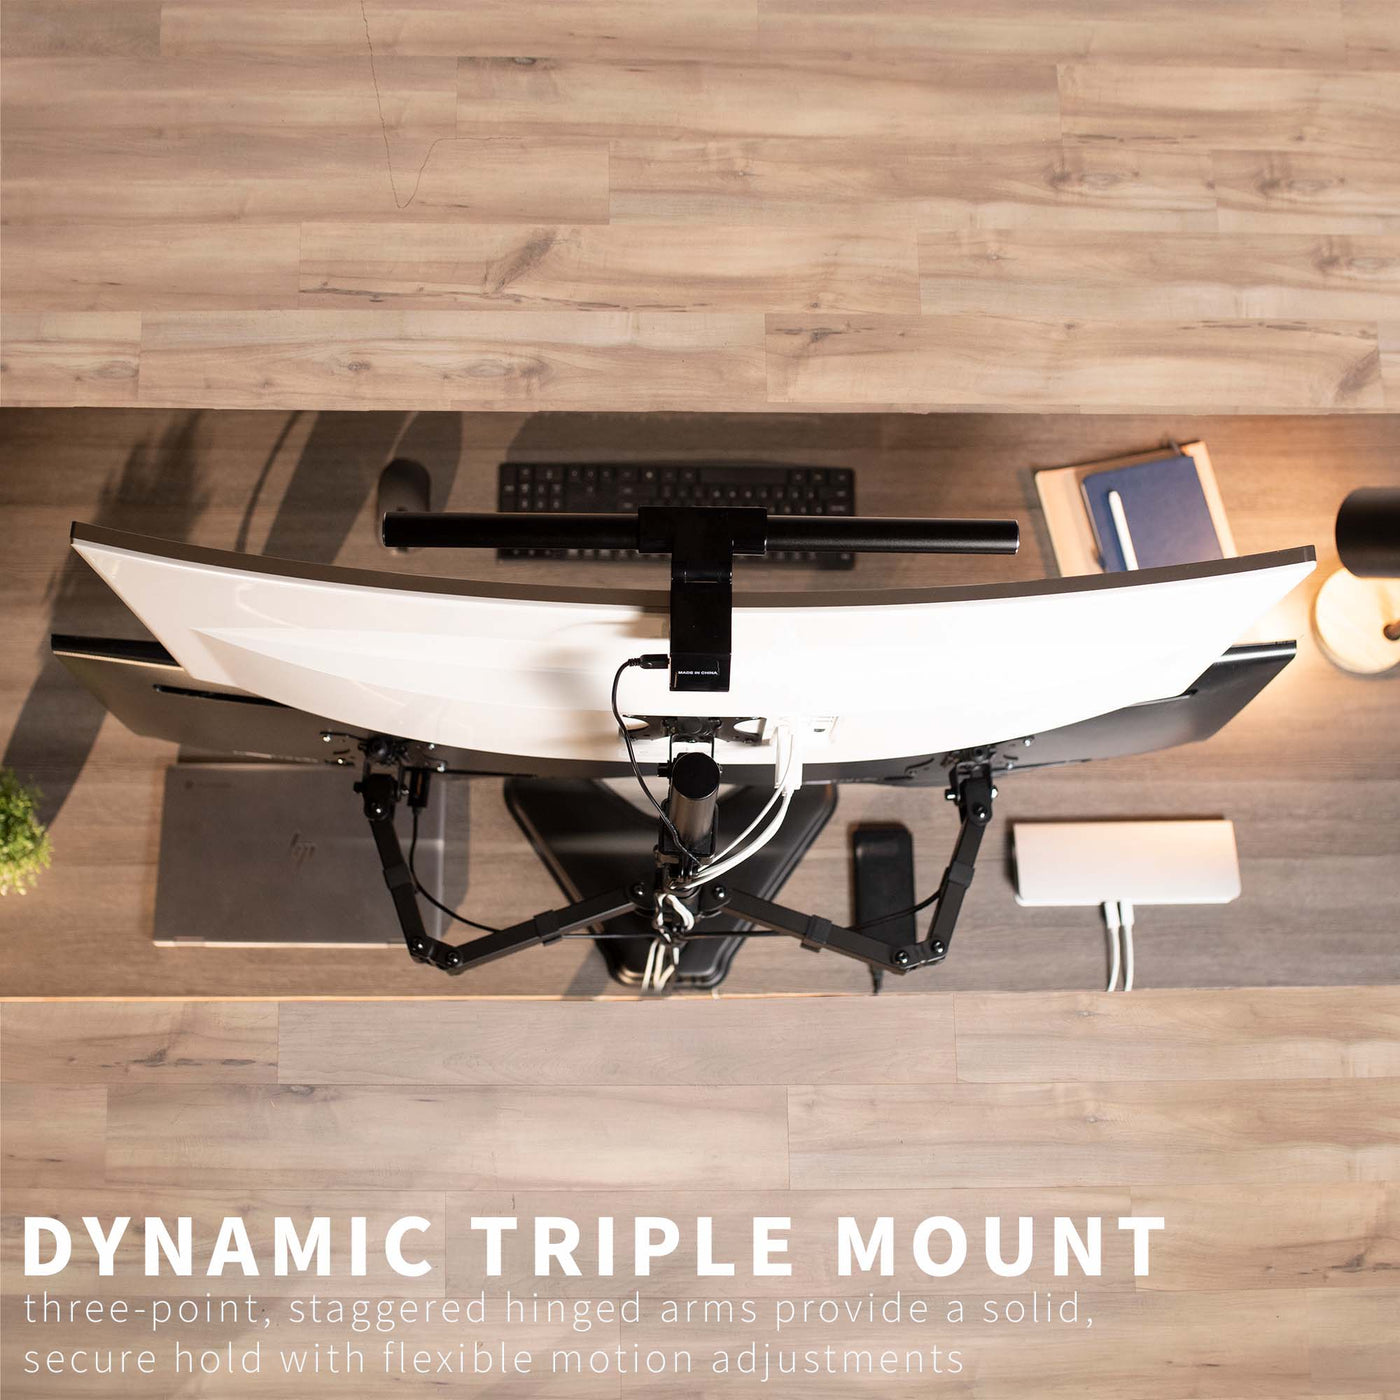 Triple Monitor Desk Stand